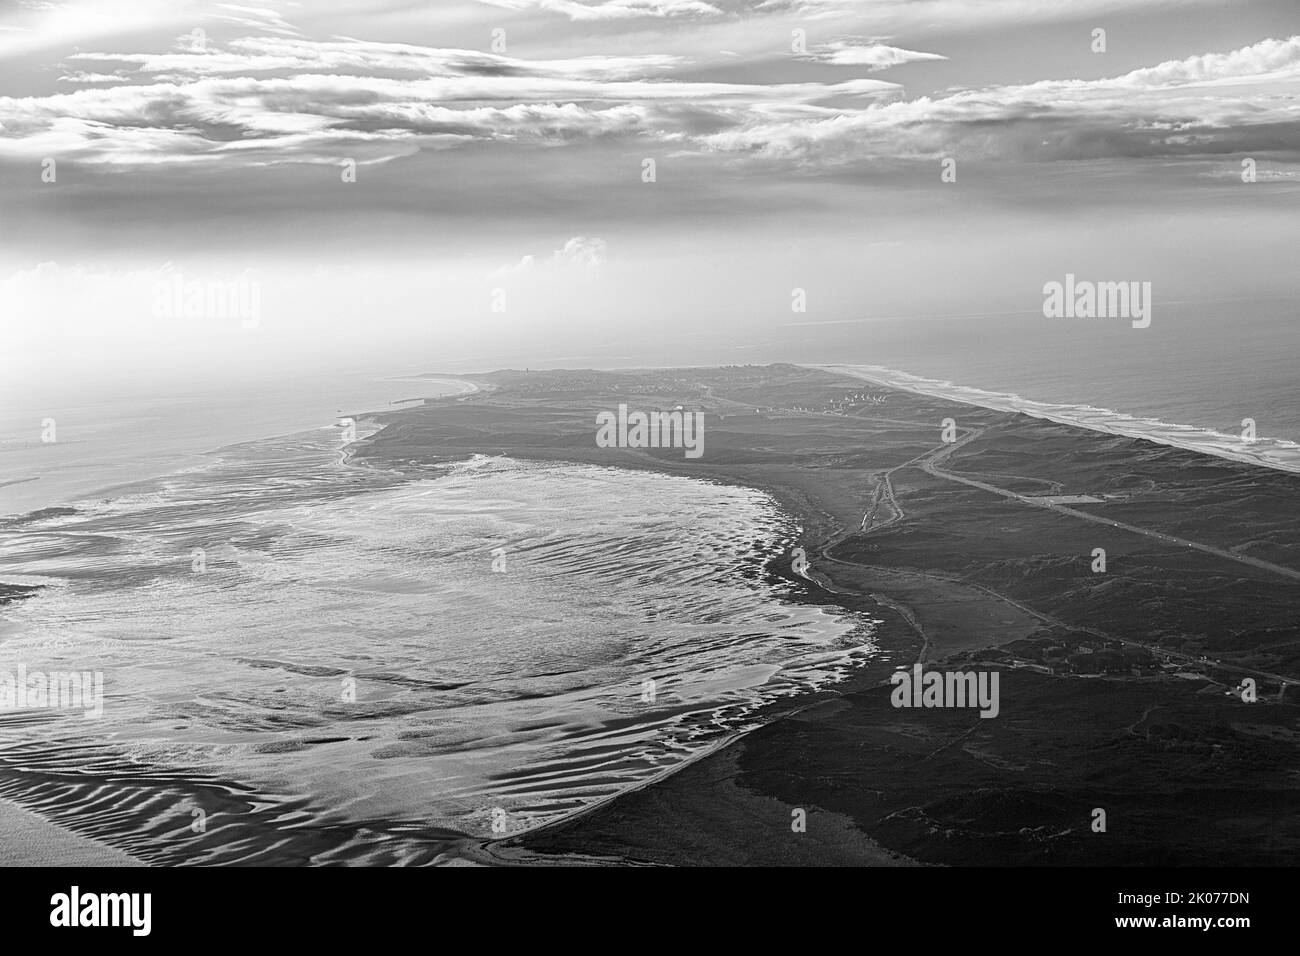 Küstenlinie der Gemeinde Hoernum, Luftaufnahme, Schwarz-Weiß-Aufnahme, Südspitze von Sylt, Nordfriesische Inseln, Nordsee Stockfoto